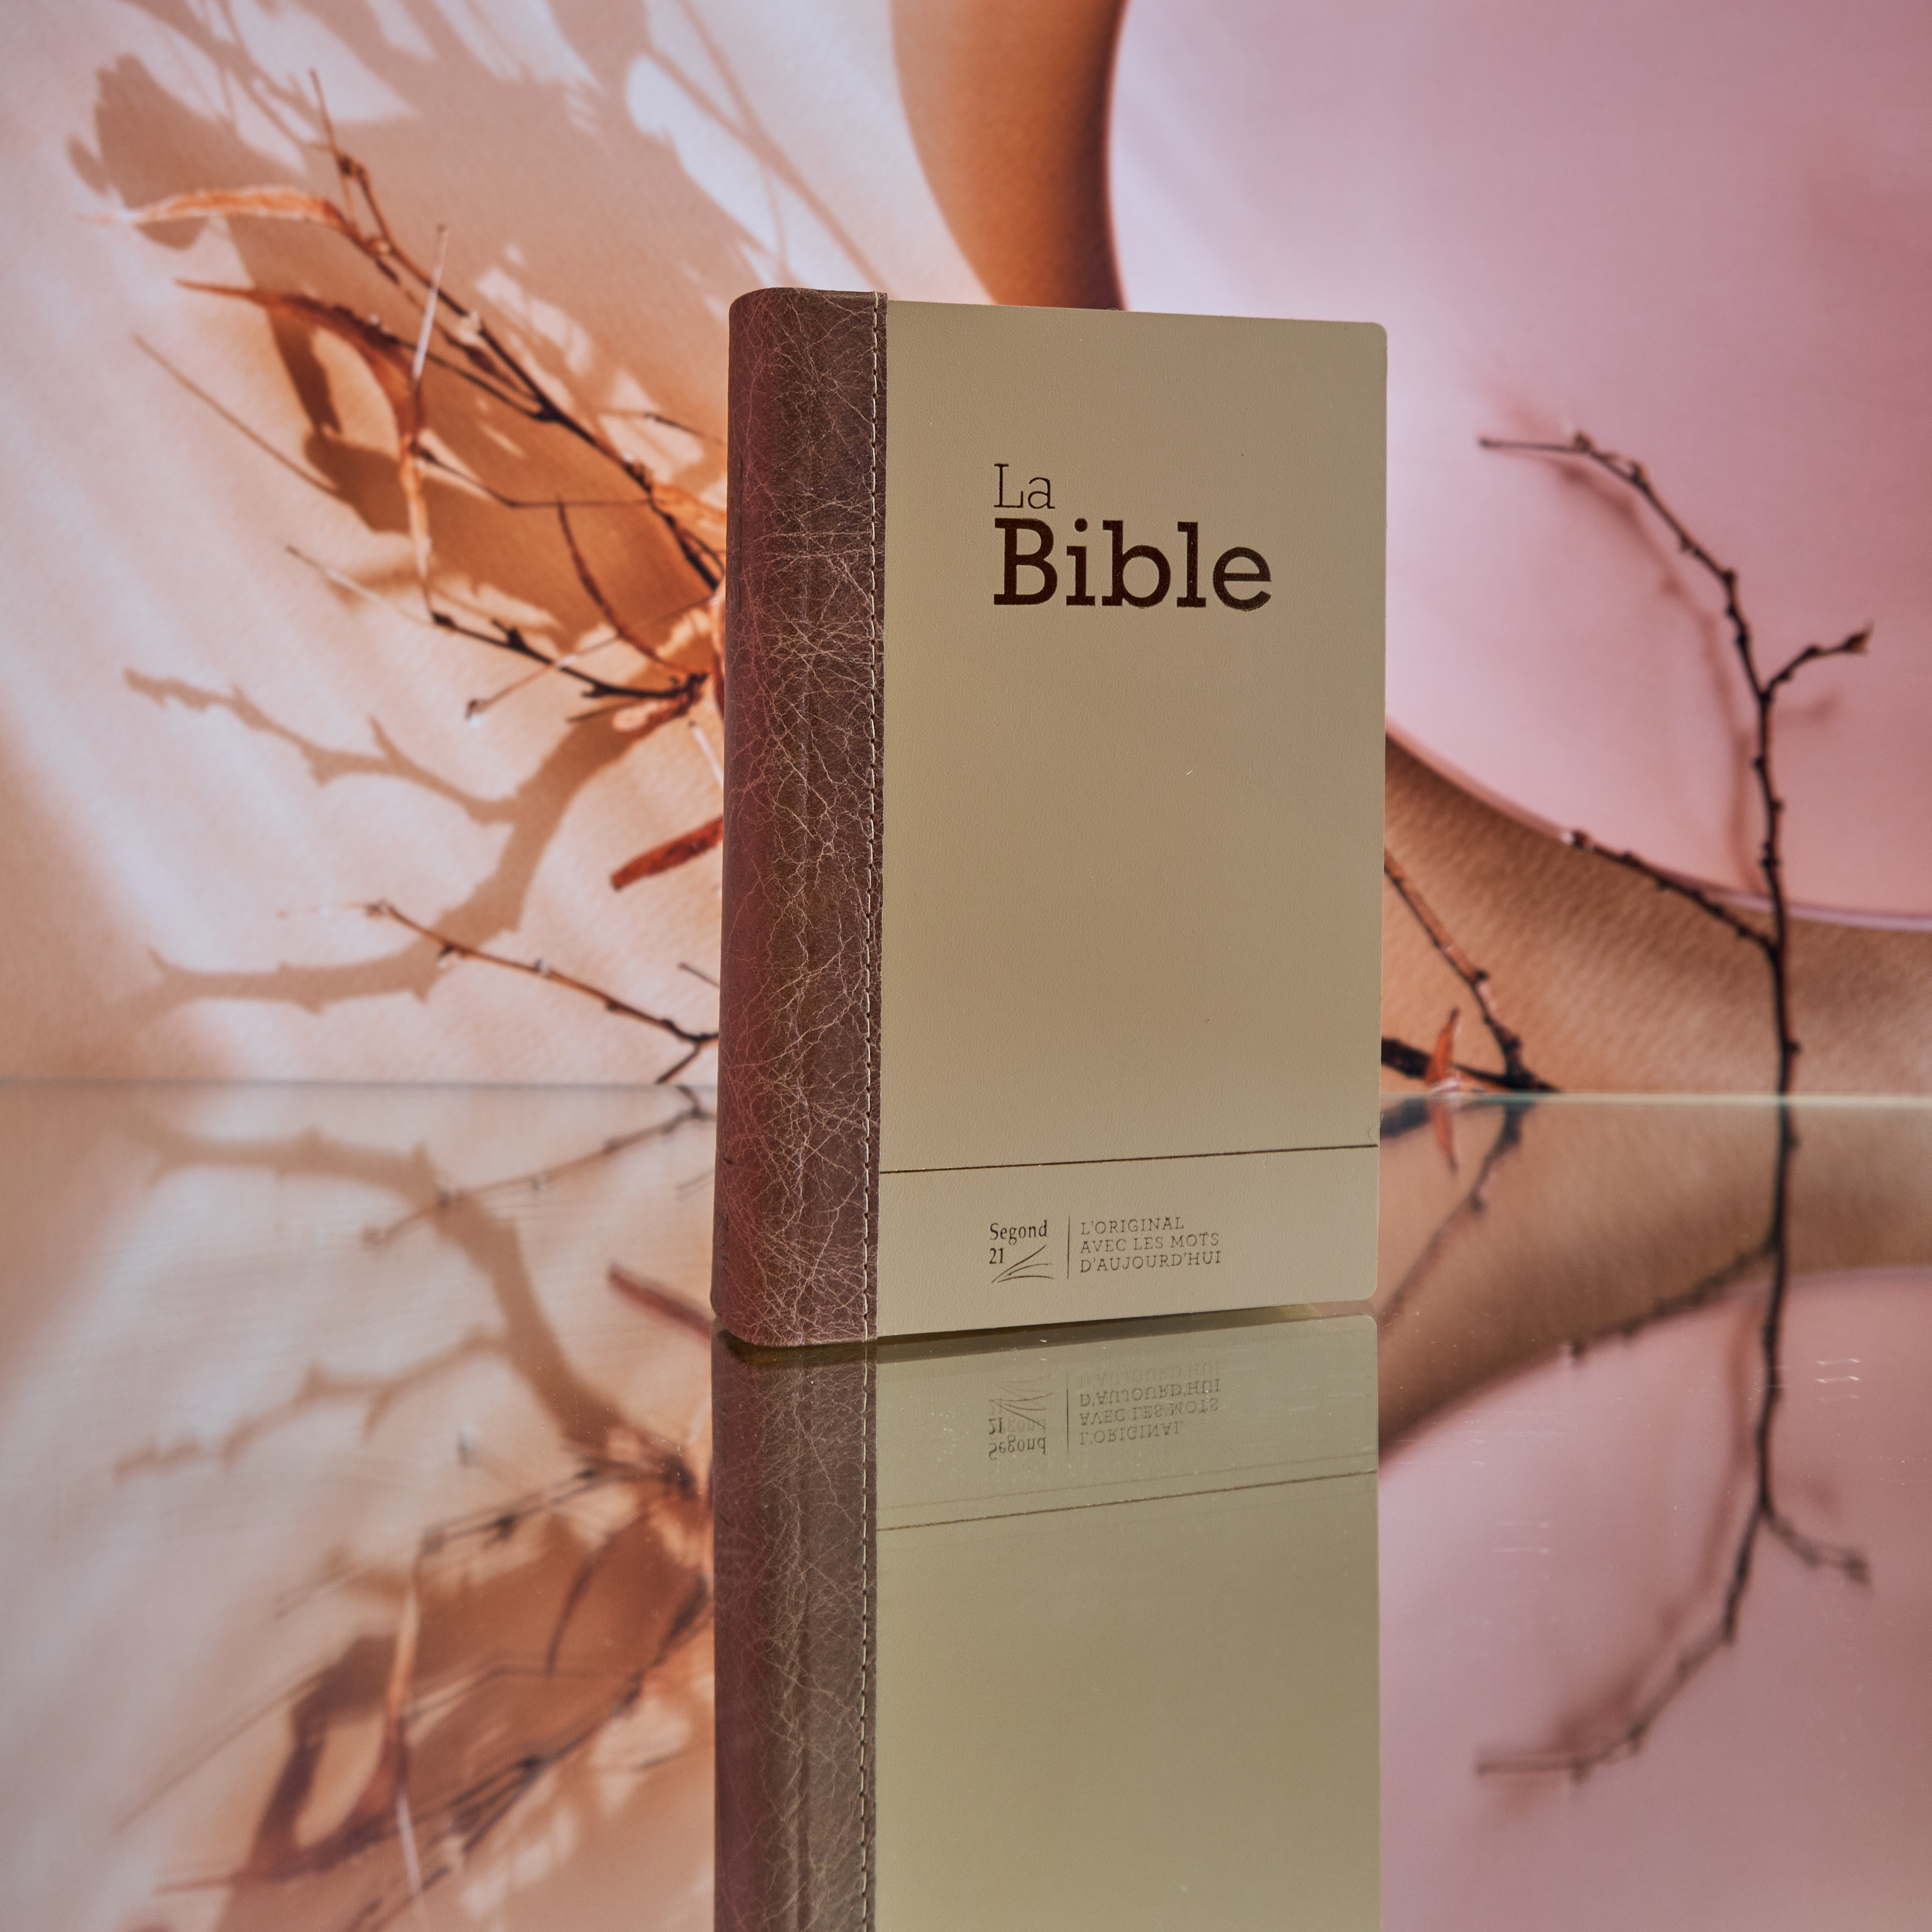 Bible Segond 21 compacte  (Premium style) - Couverture rigide cuir praliné-chocolat - tranches or et